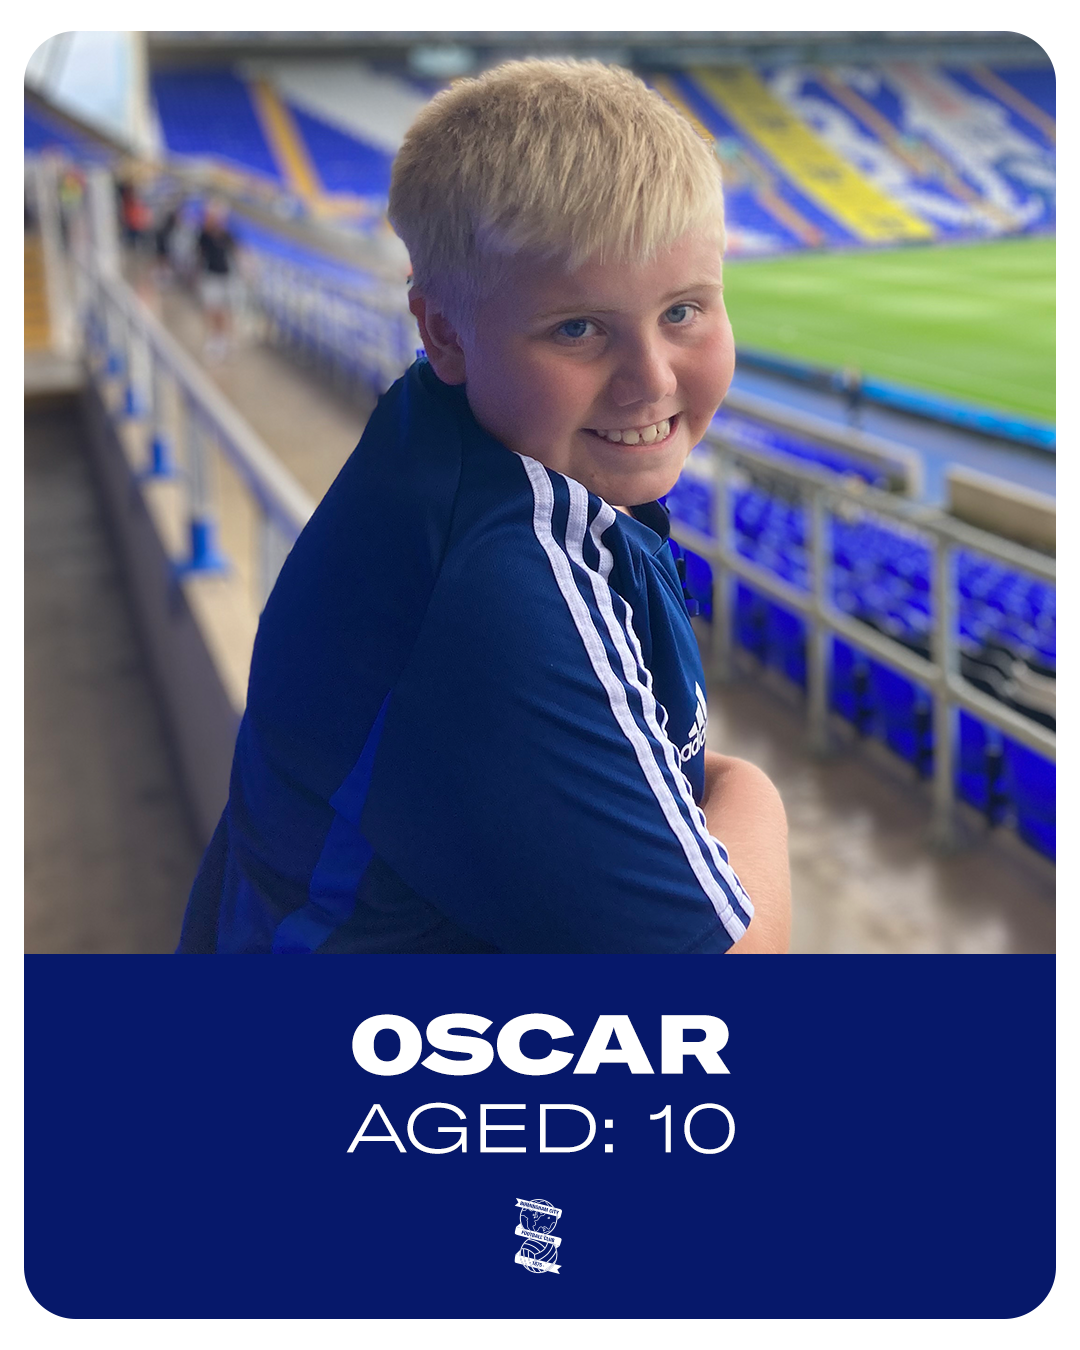 Oscar, Aged 10